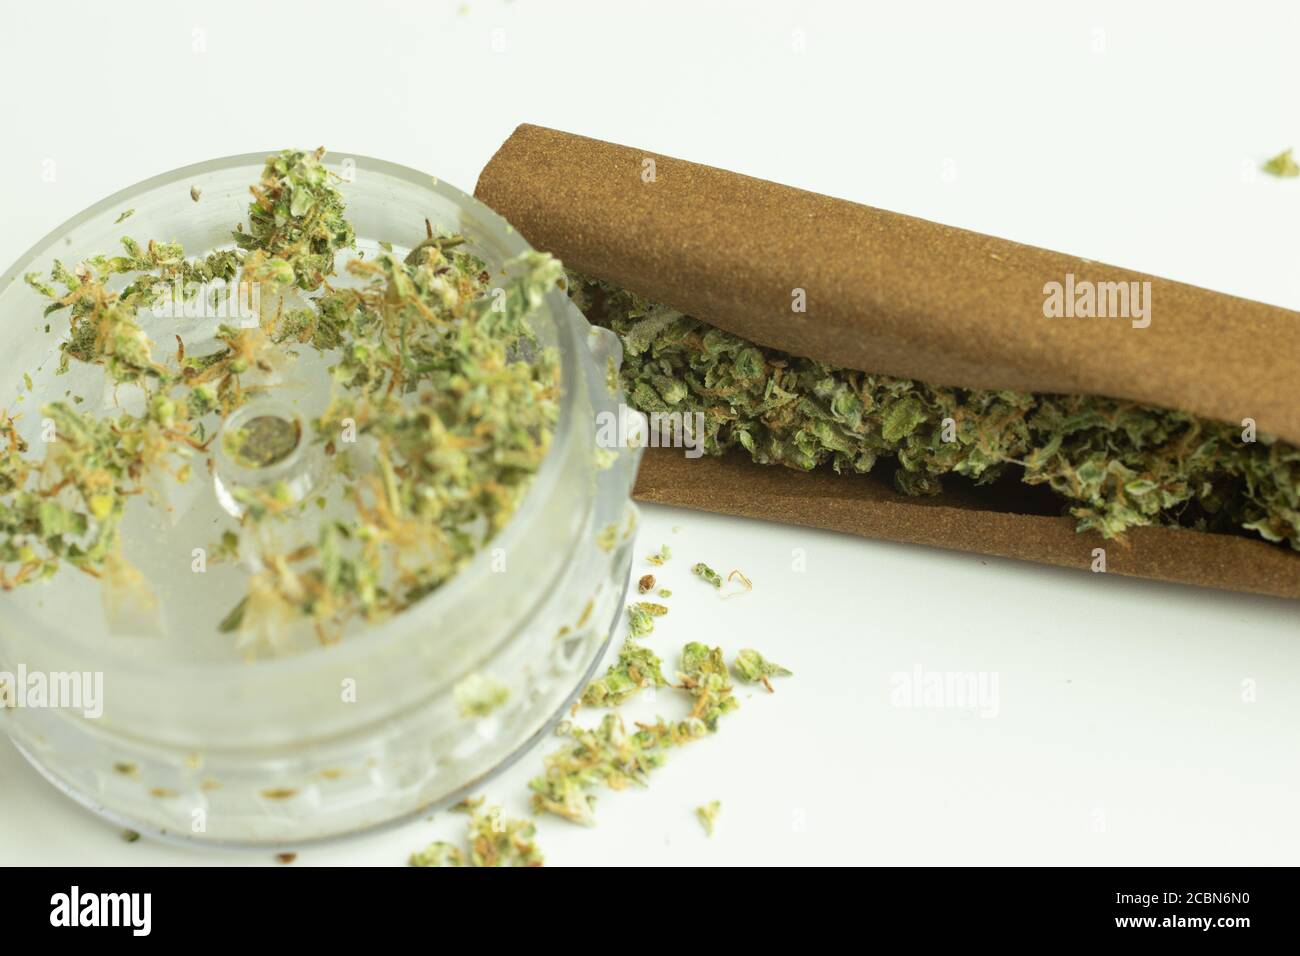 Macinacaffè e carta da tabacco con cannabis per il fumo ricreativo legale. THC uso di droga in medicina o in assistenza sanitaria Foto Stock